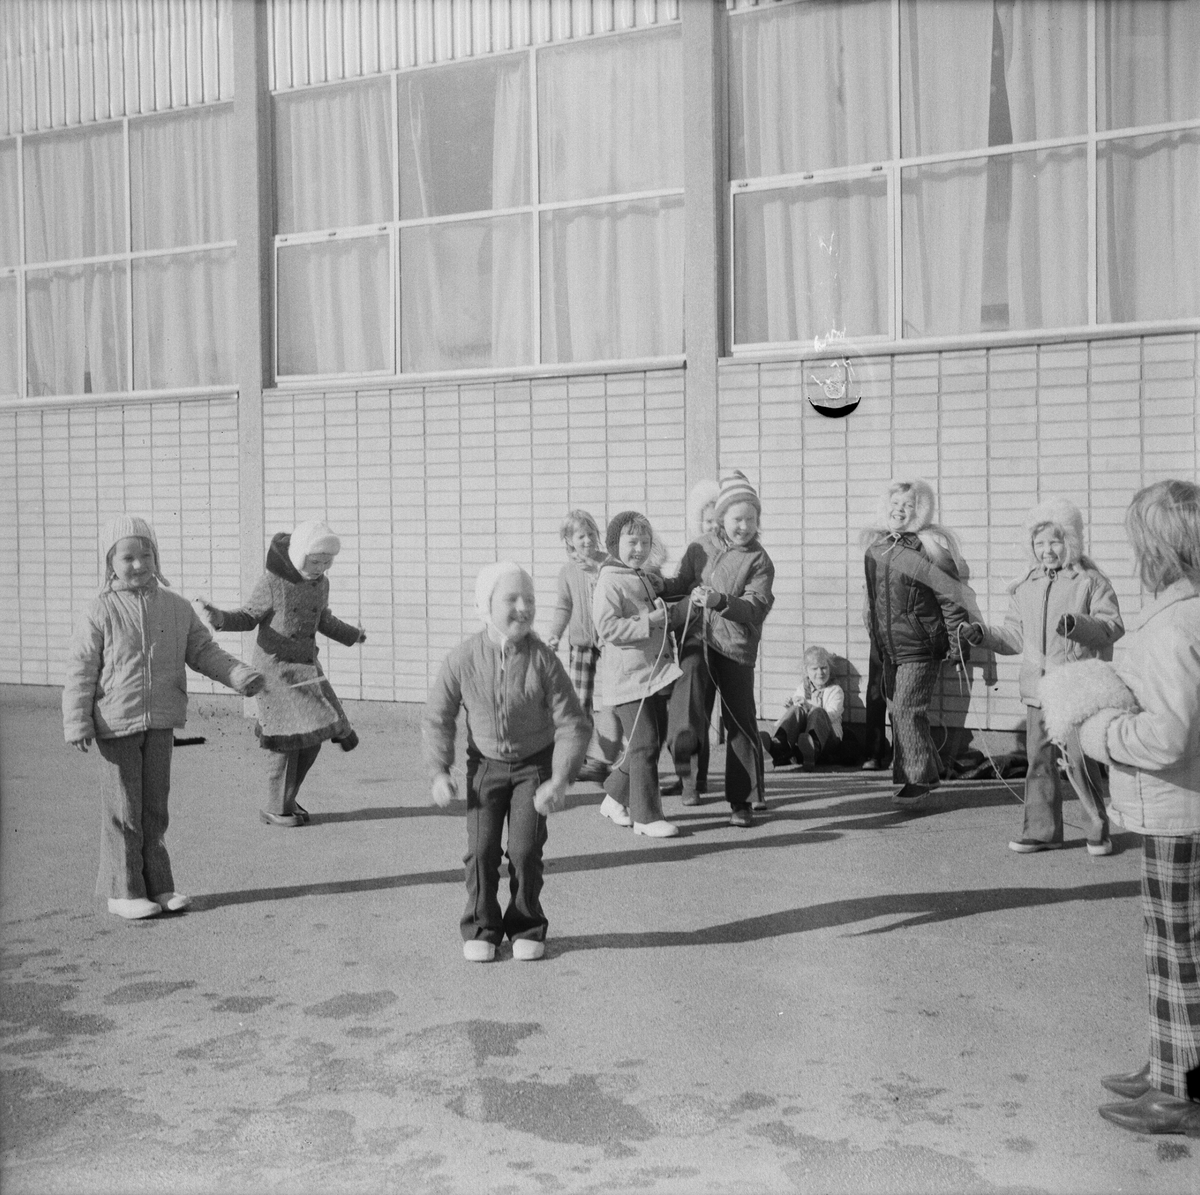 Flickor som hoppar hopprep, Örbyhus, Uppland, mars 1972